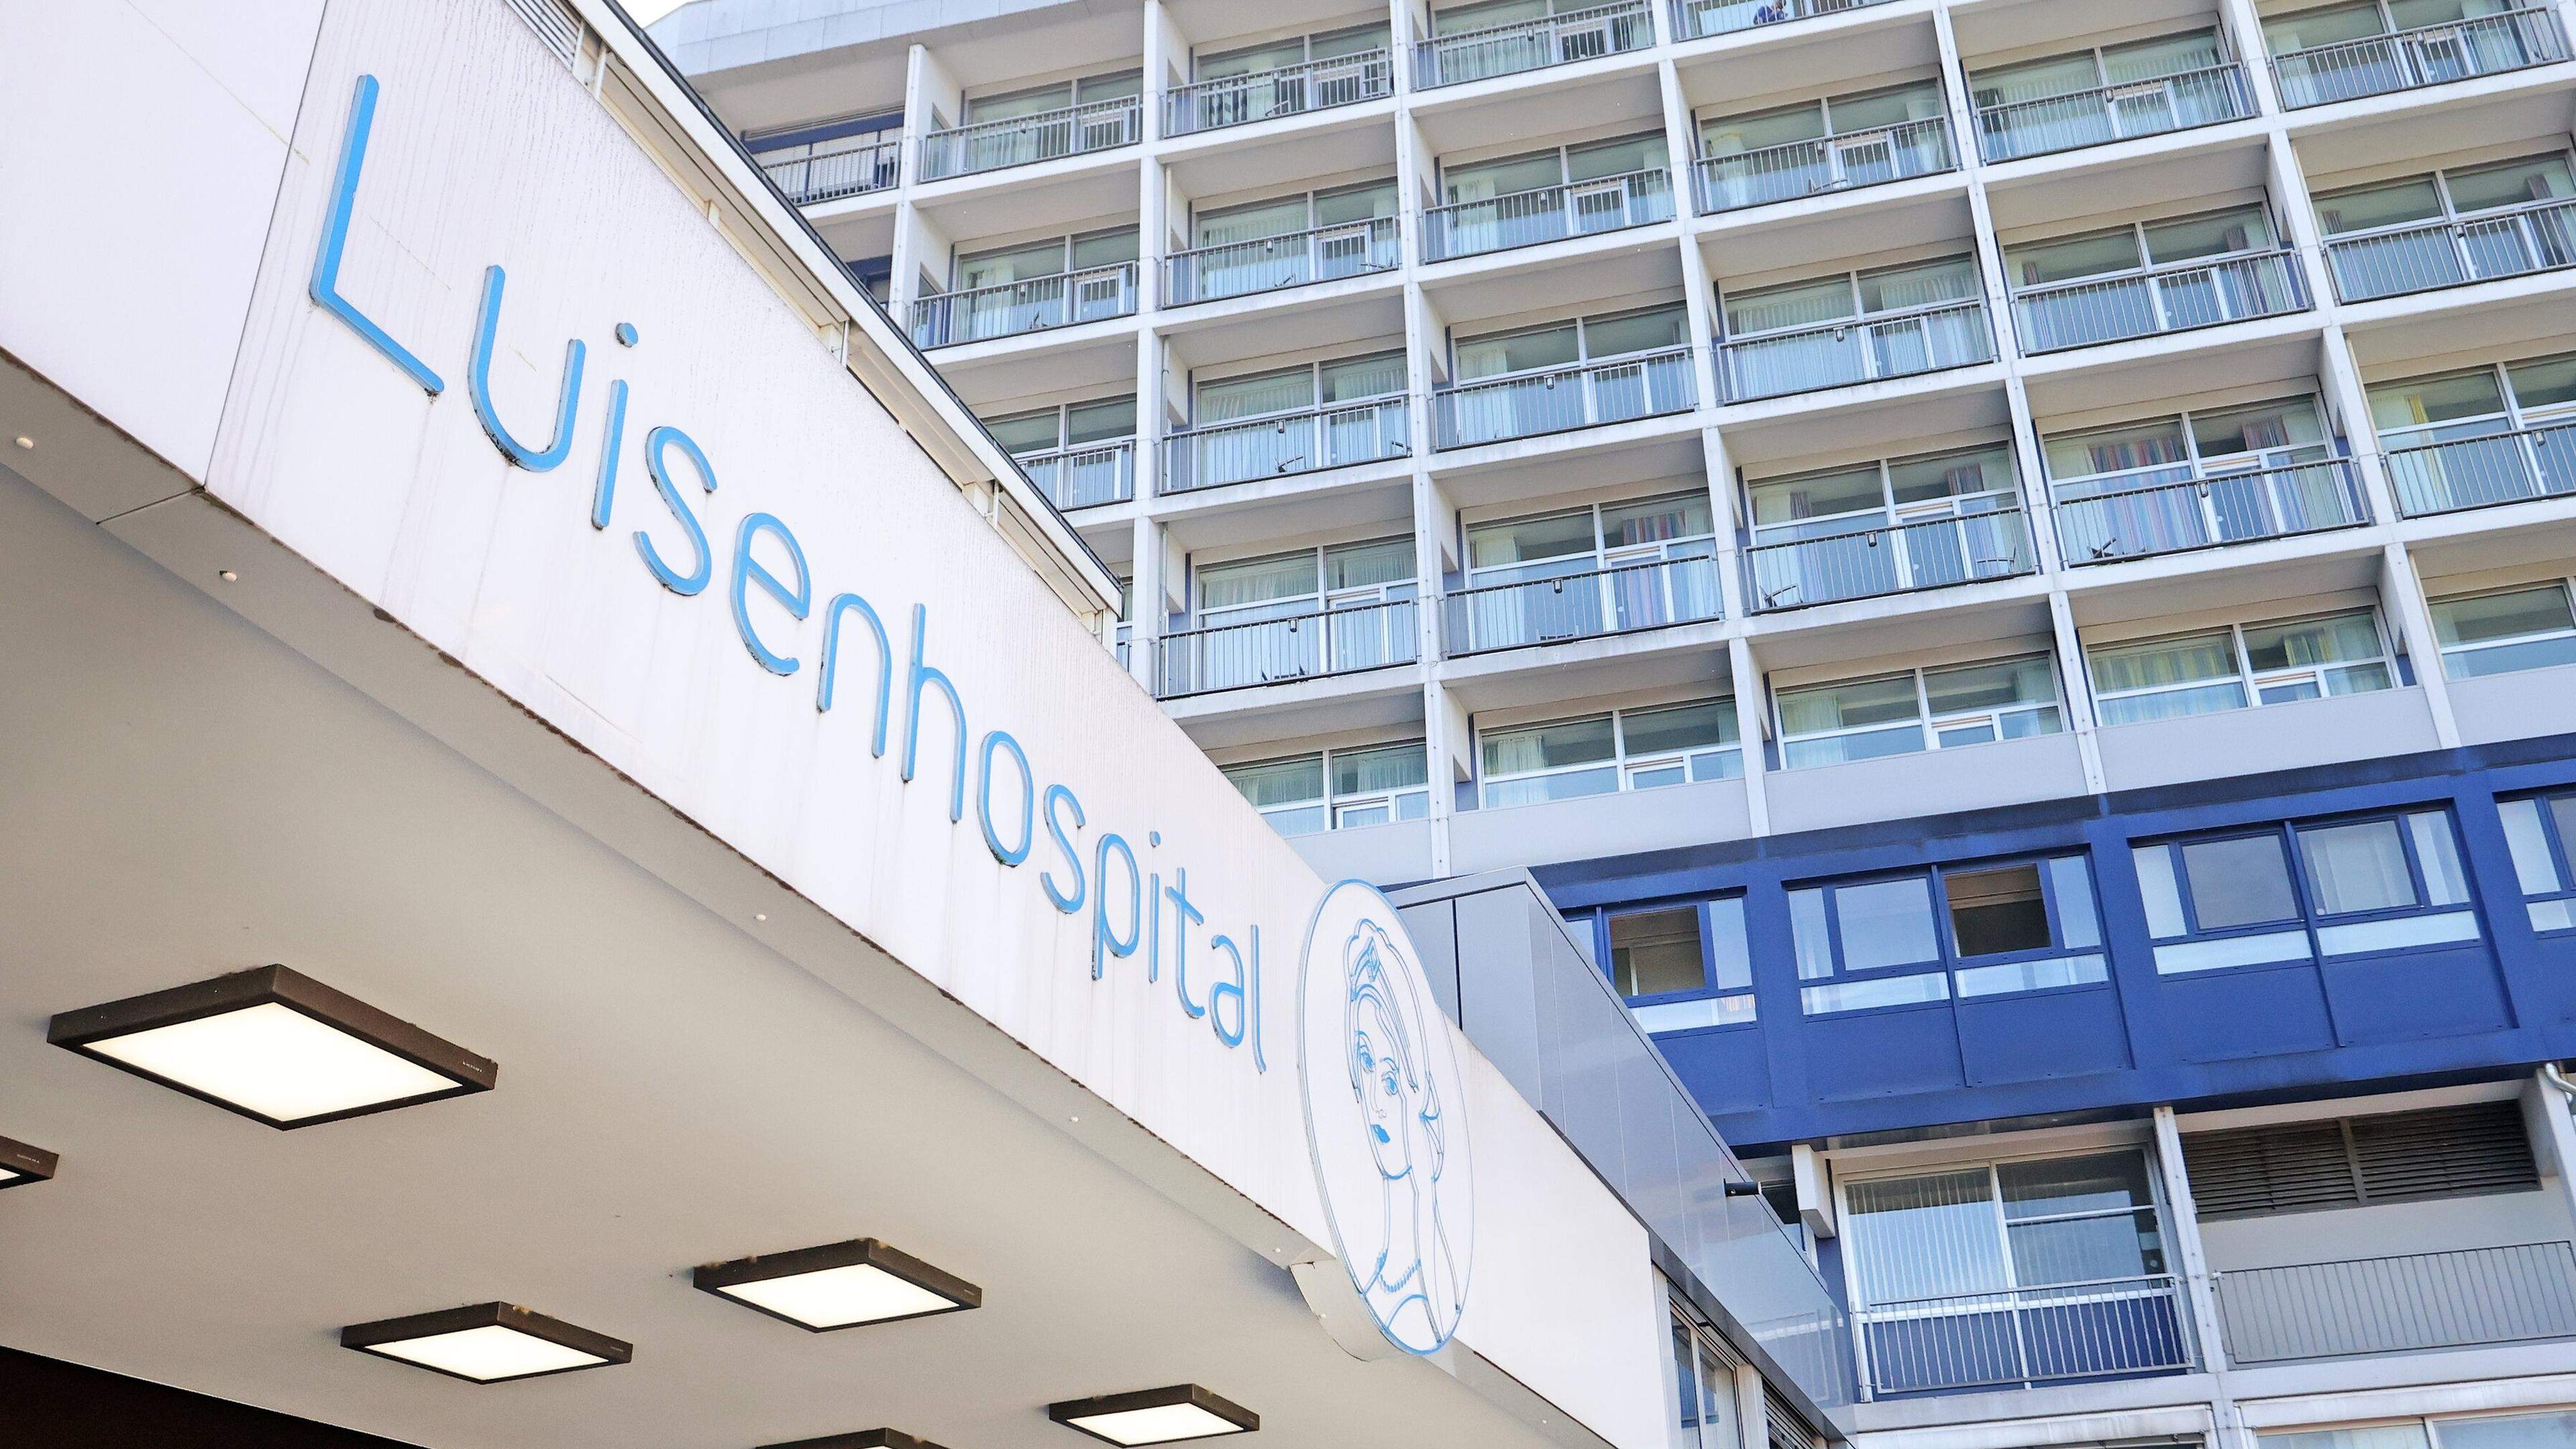 Stellt sich hinter die eigenen Therapie- und Pflegekräfte: Das Luisenhospital in Aachen beschäftigt ein prominenter Personalfall.